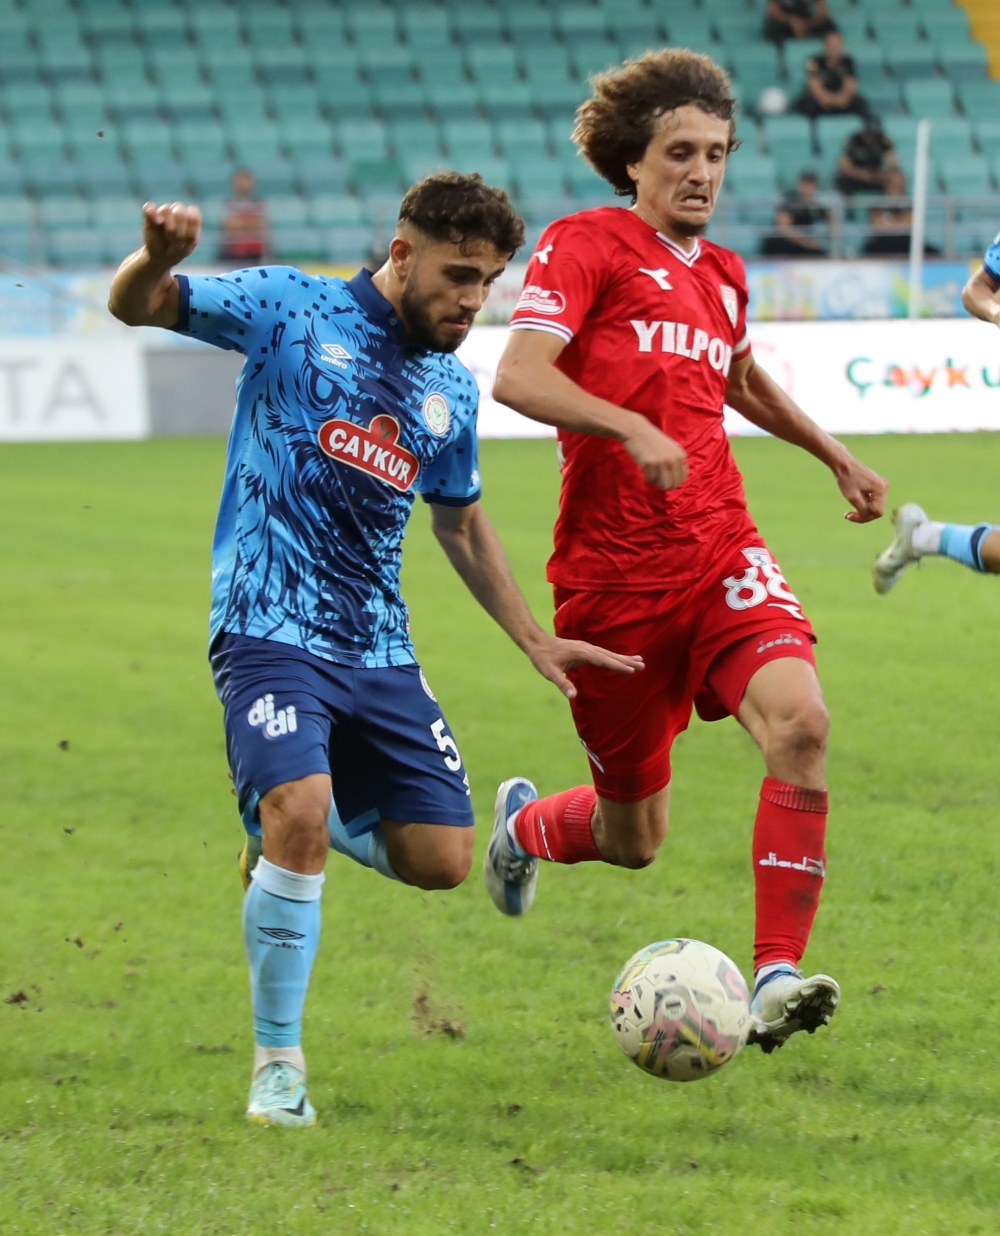 Çaykur Rizespor - Yılport Samsunspor maçından kareler 23